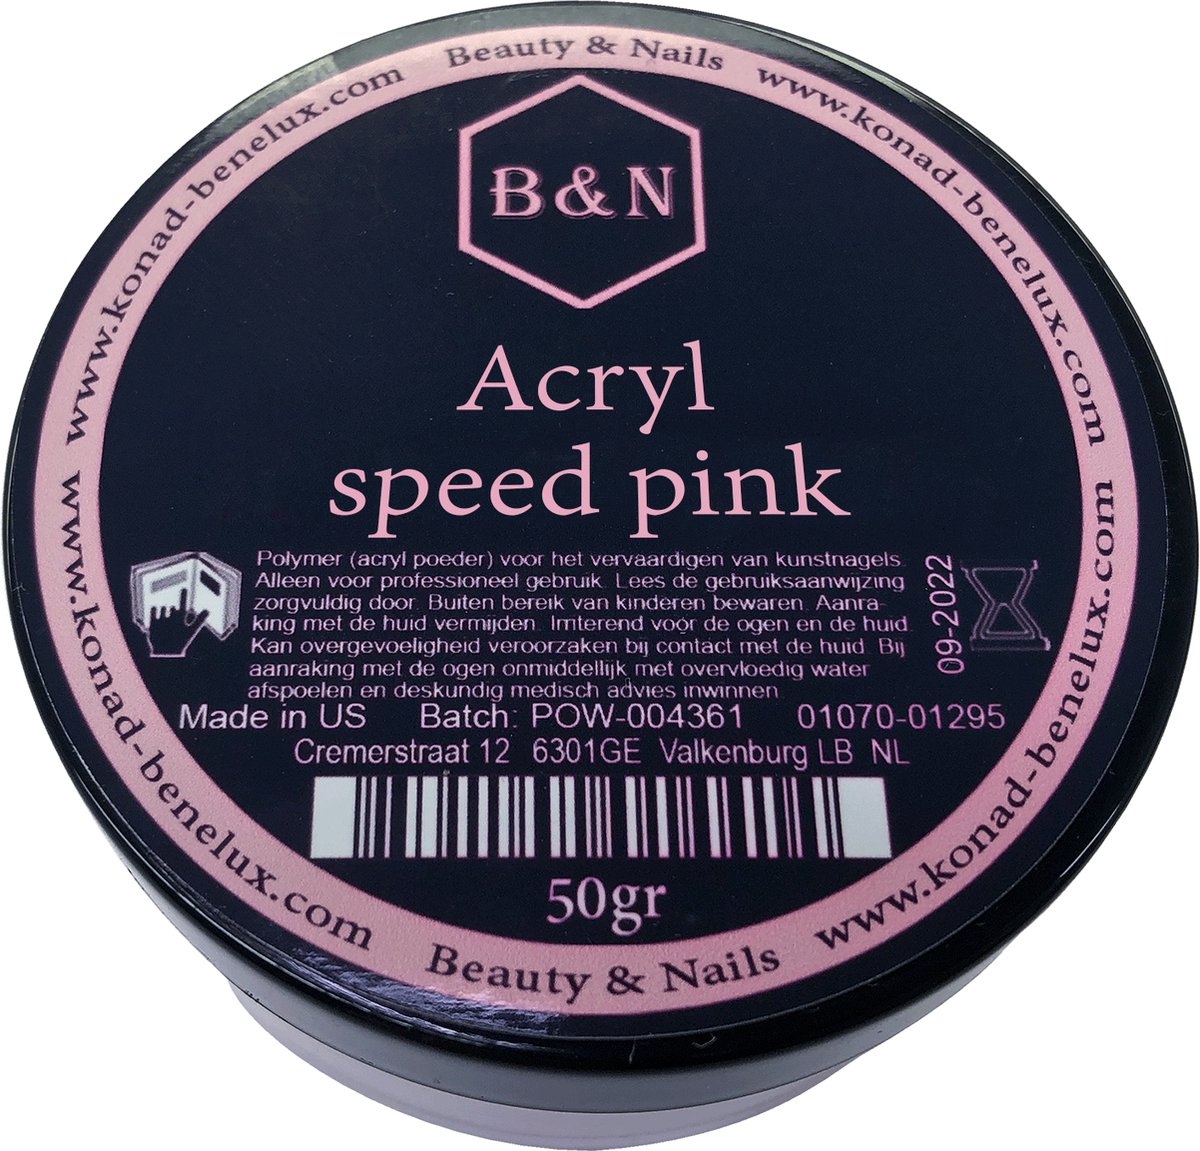 Acryl - speed pink - 50 gr | B&N - acrylpoeder - VEGAN - acrylpoeder